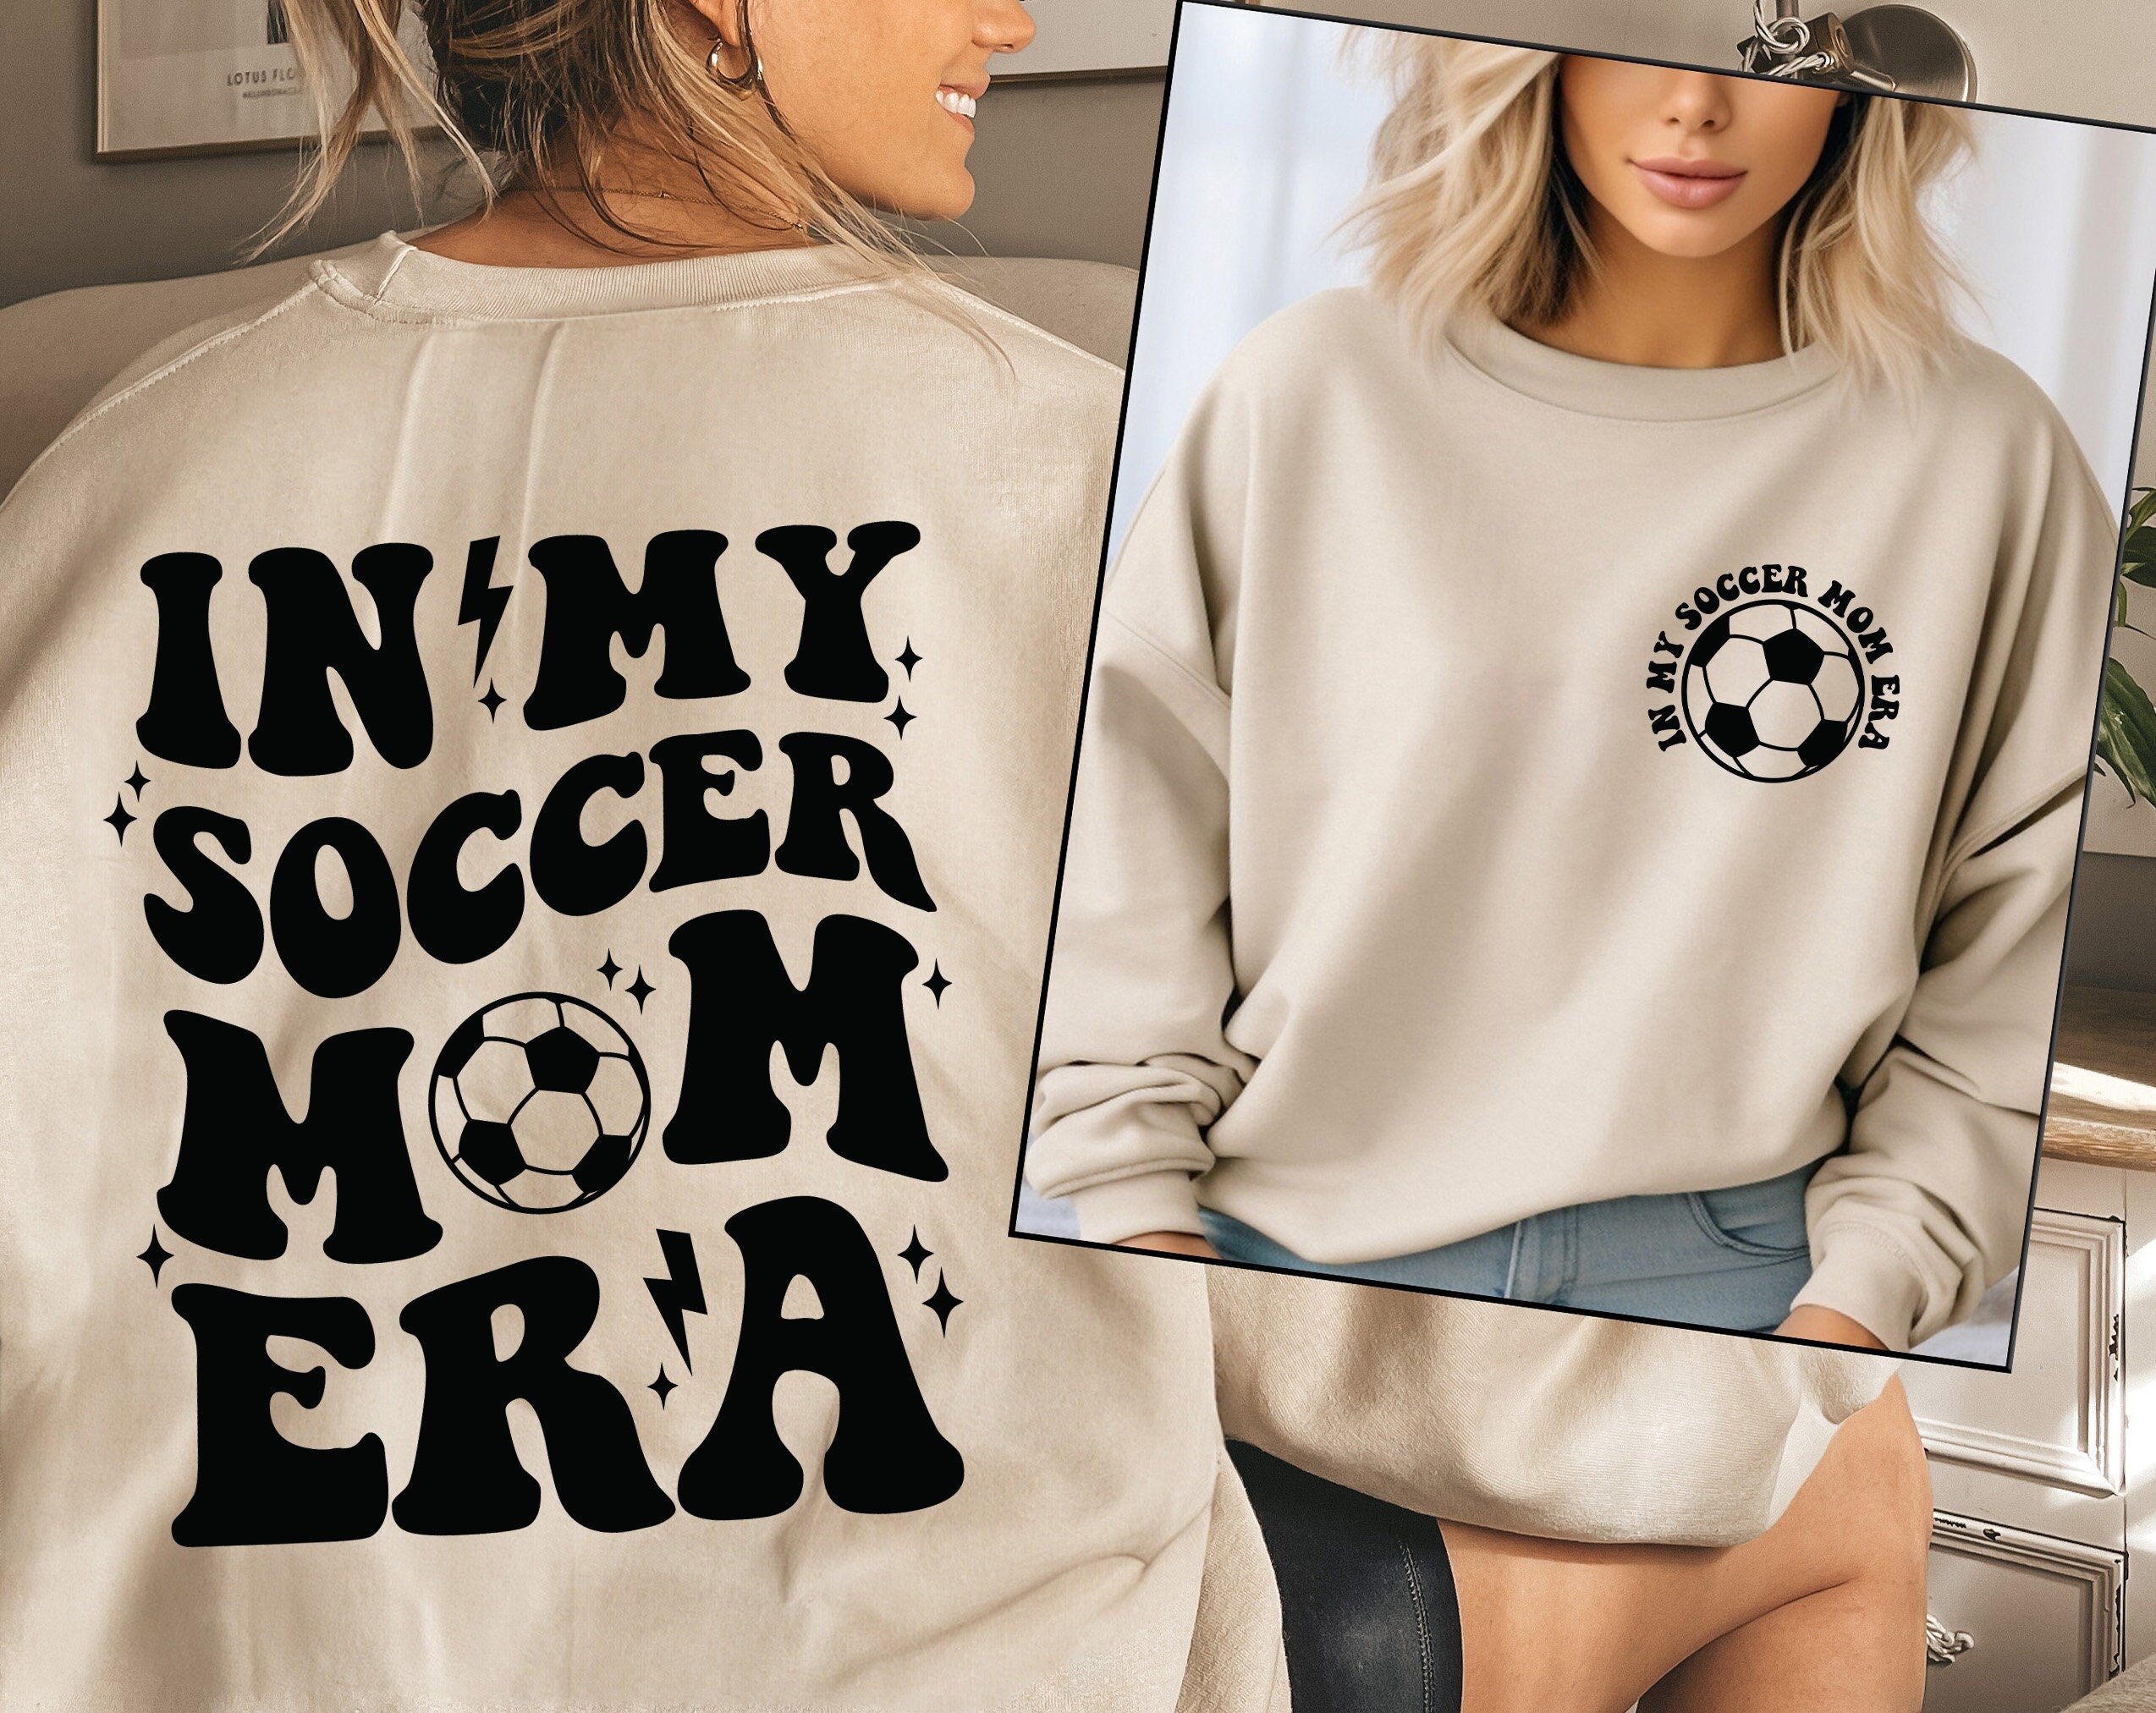 in my soccer mom era #lululemon #hoodie #hoodieing